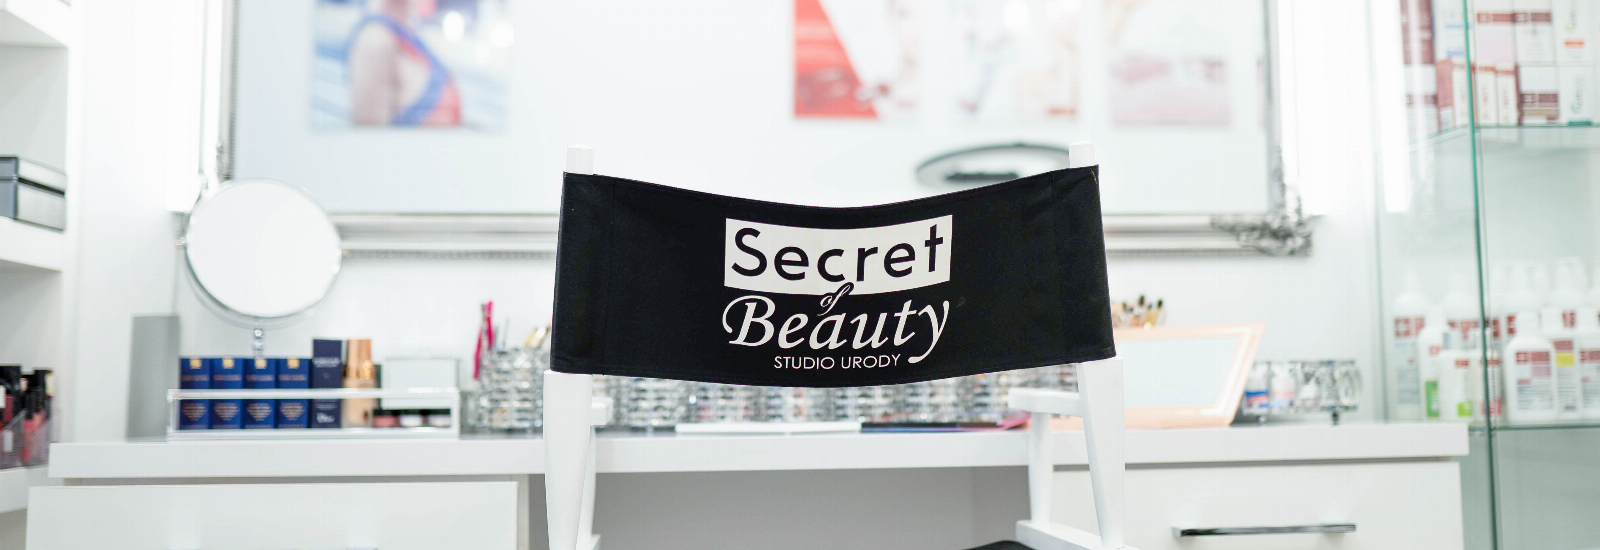 Secret Of Beauty